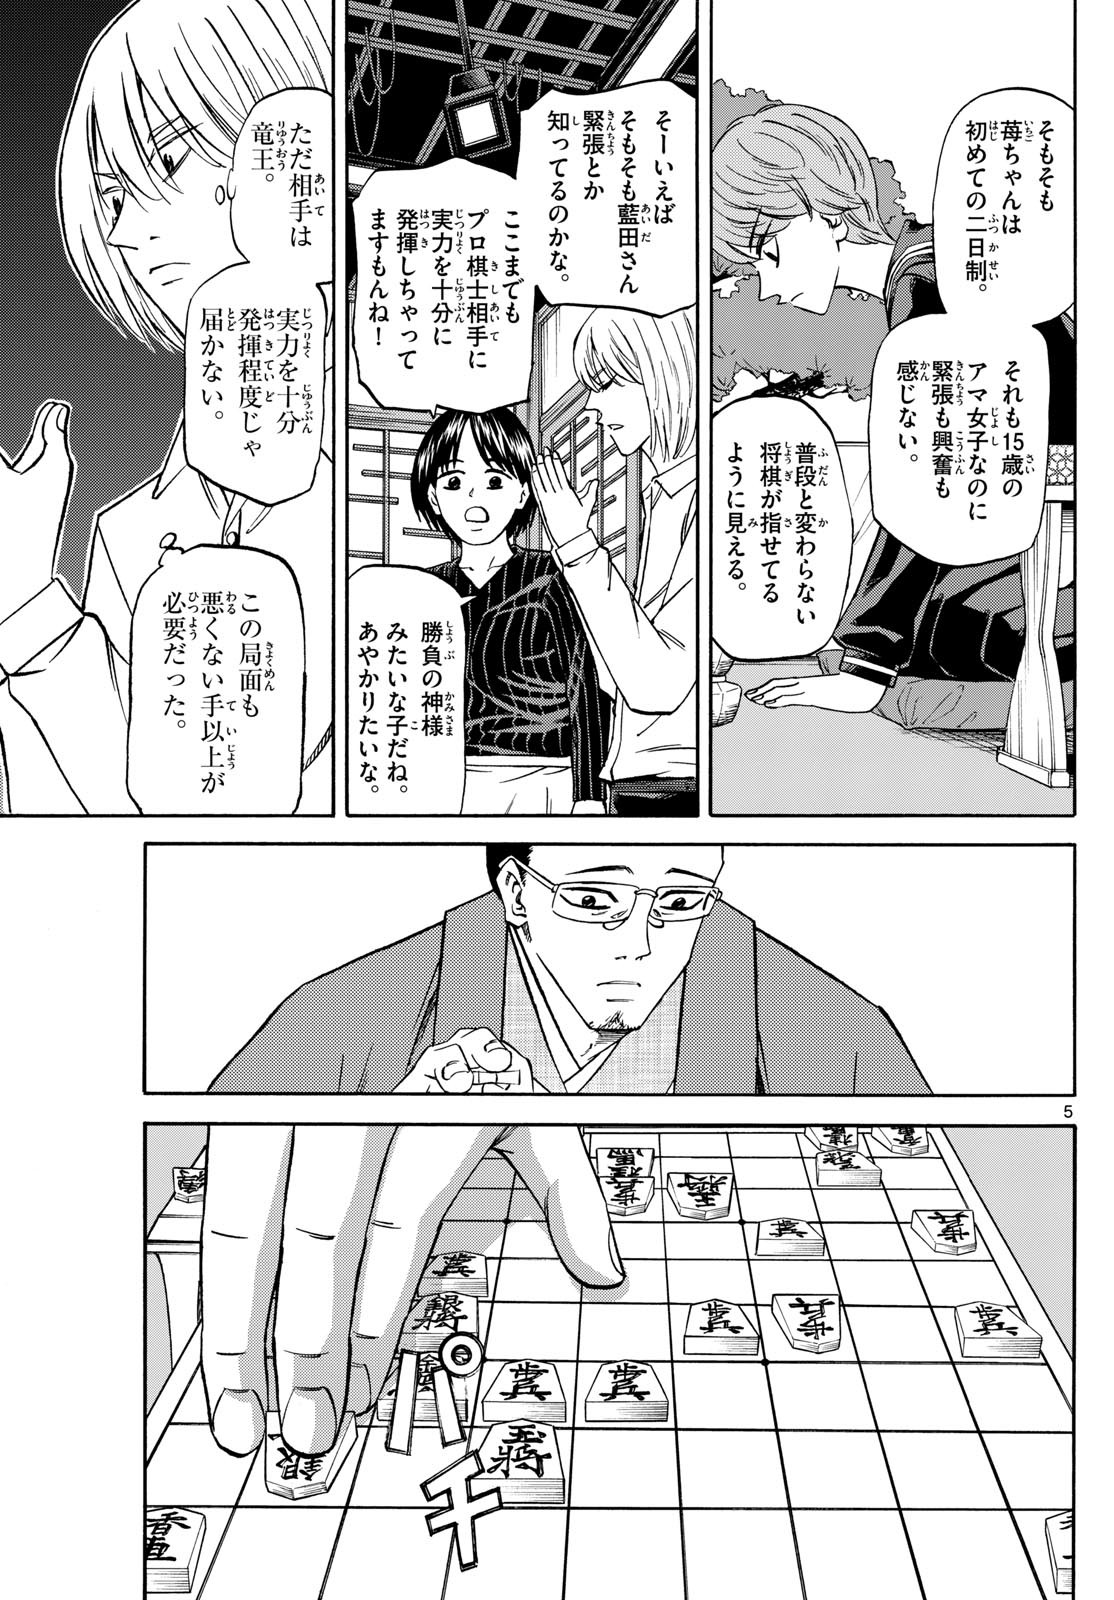 Ryu-to-Ichigo - Chapter 155 - Page 5